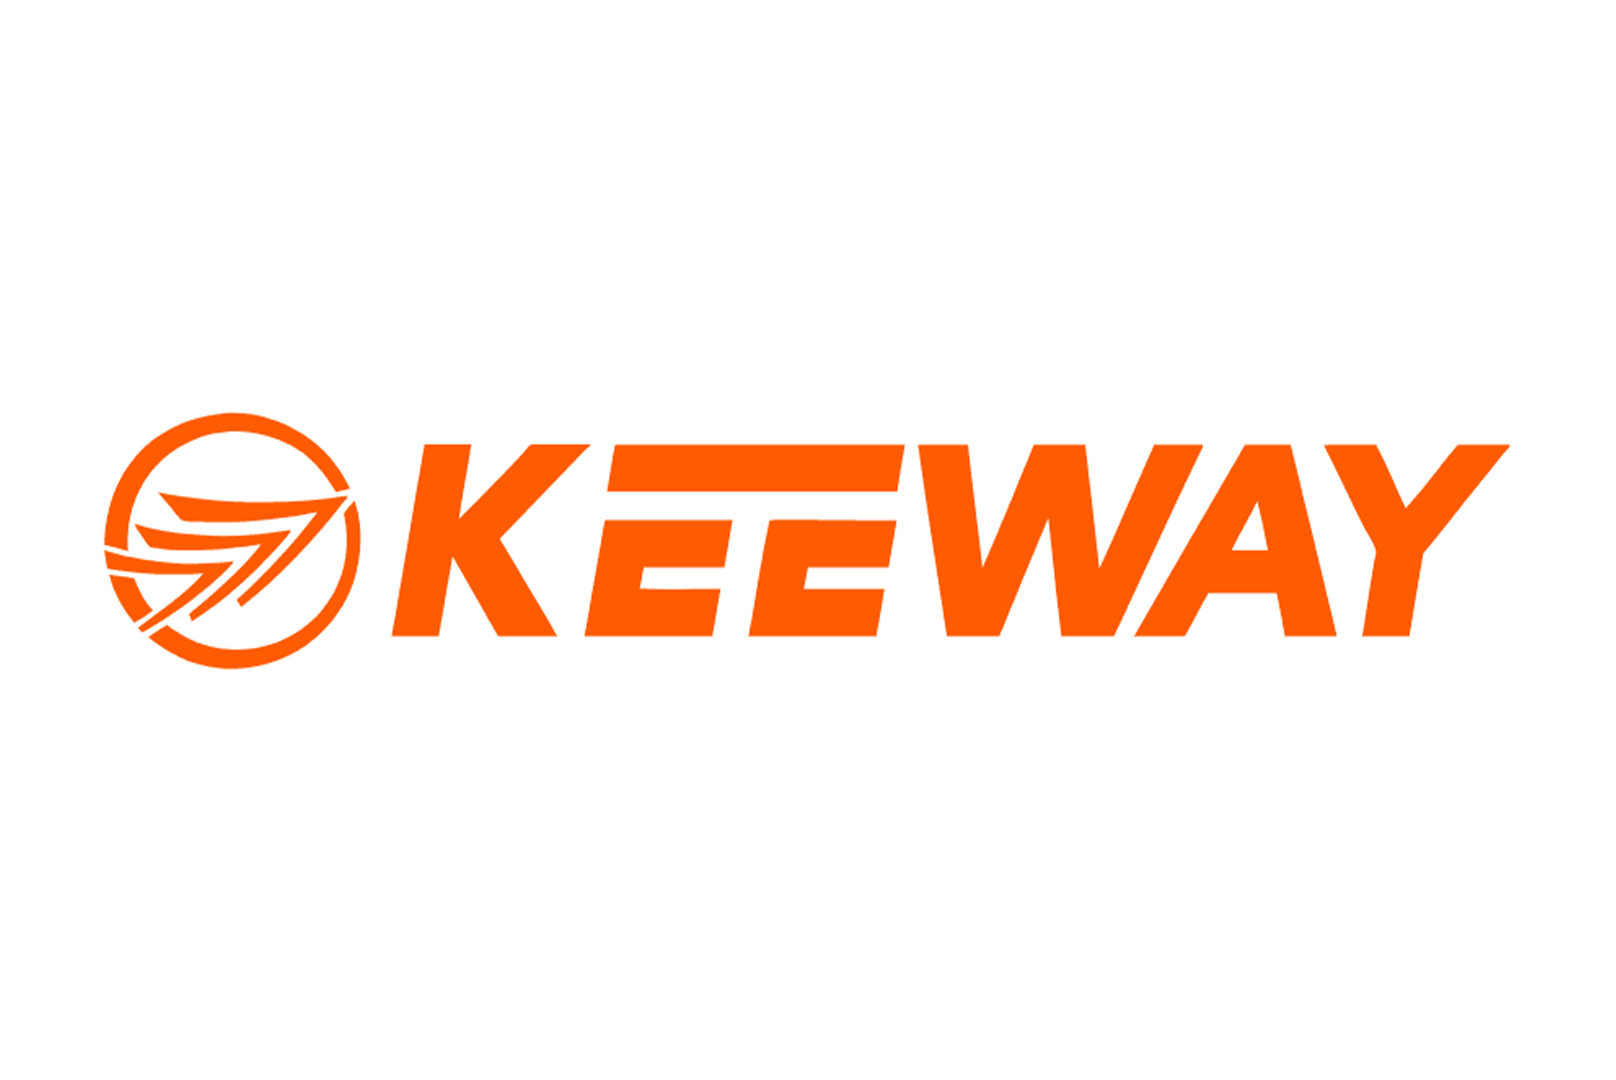 2022-07-01-07-47-46-keeway-logo.jpg